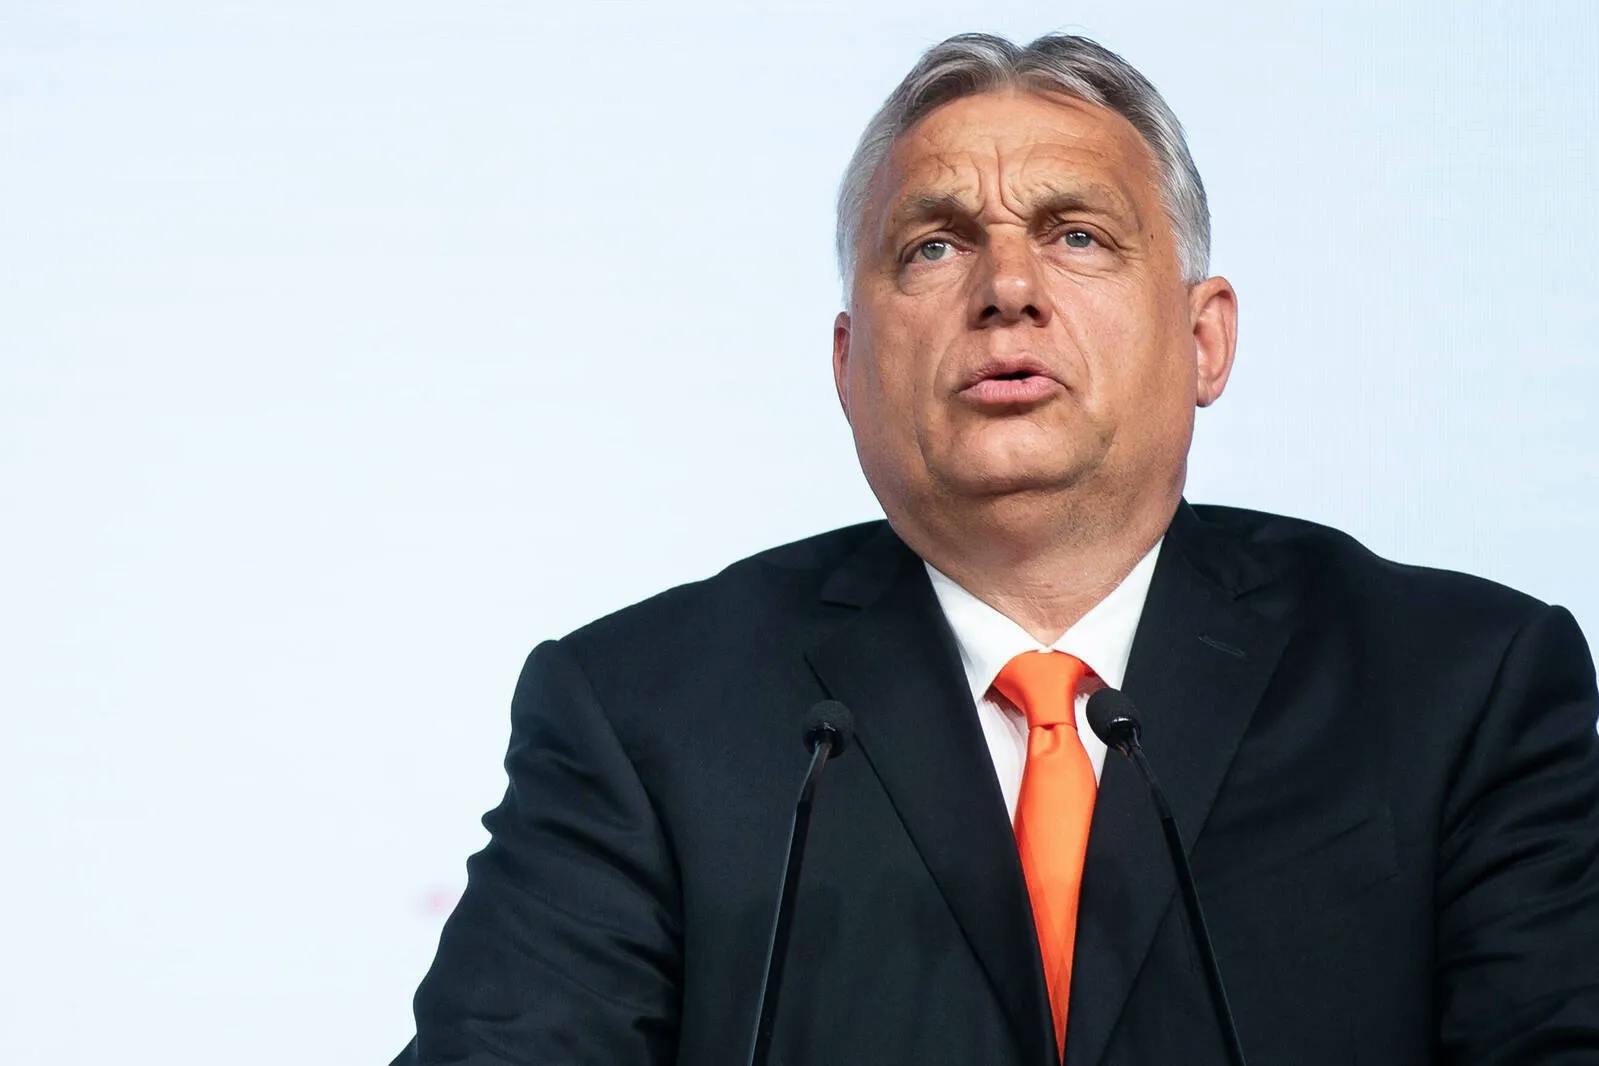 Orbán bei SPECA-Forum: „Europa braucht eine neue Strategie“